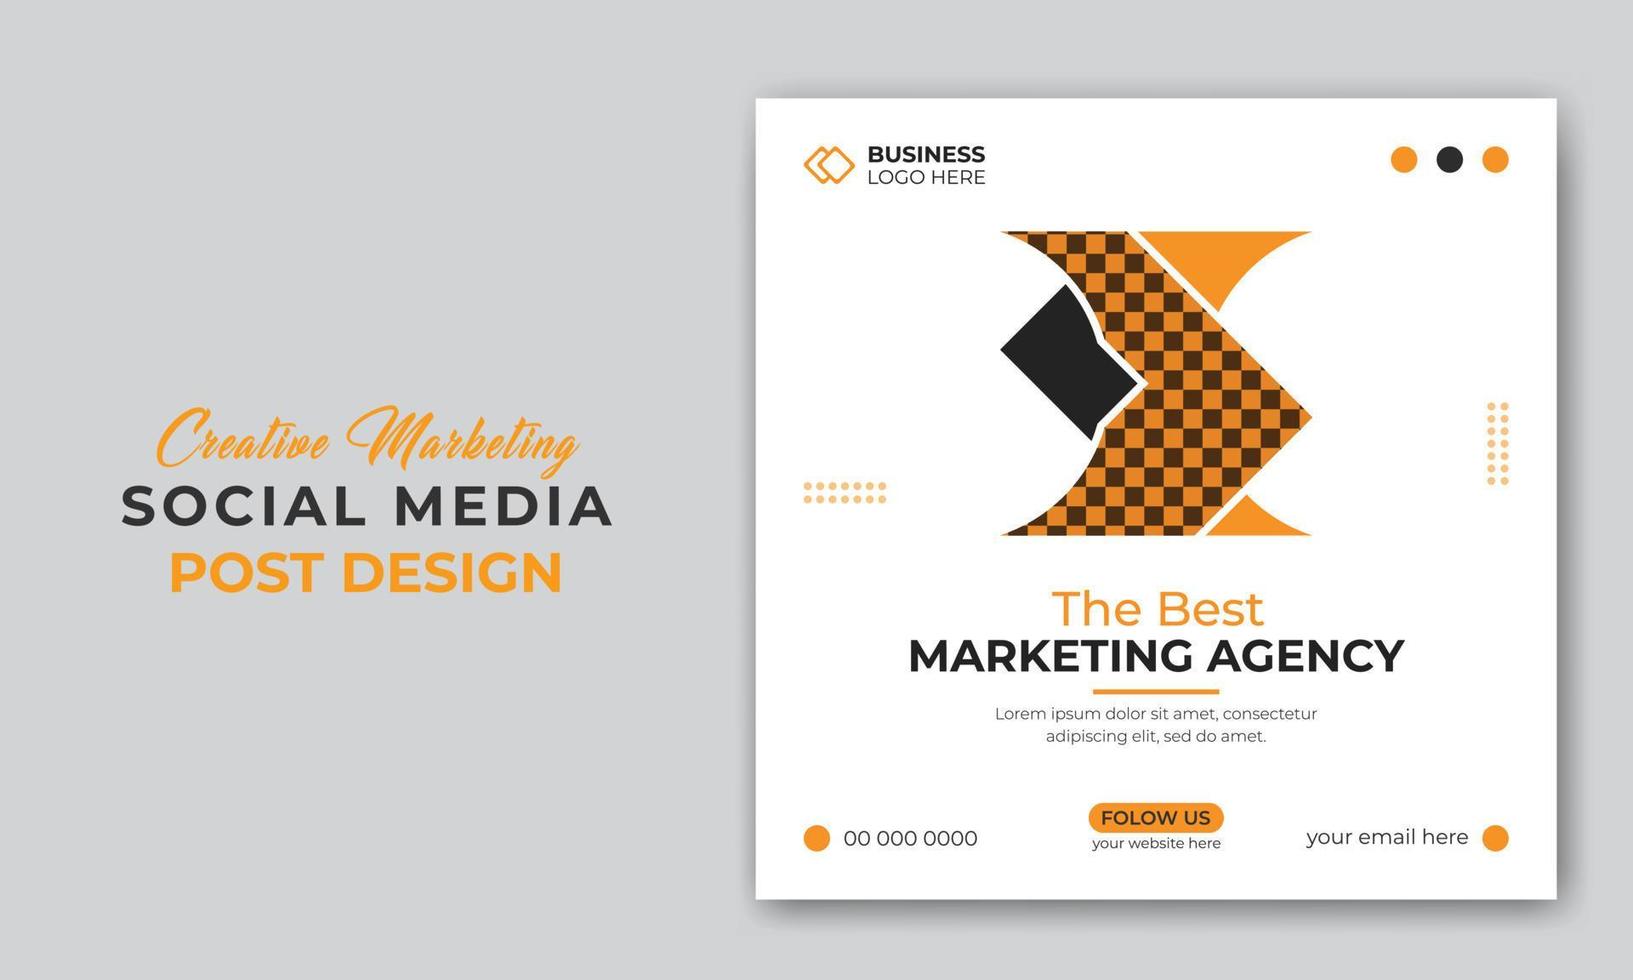 Corporate Business Digital Marketing Agentur Social Media Post oder Web-Banner-Design-Vorlage vektor